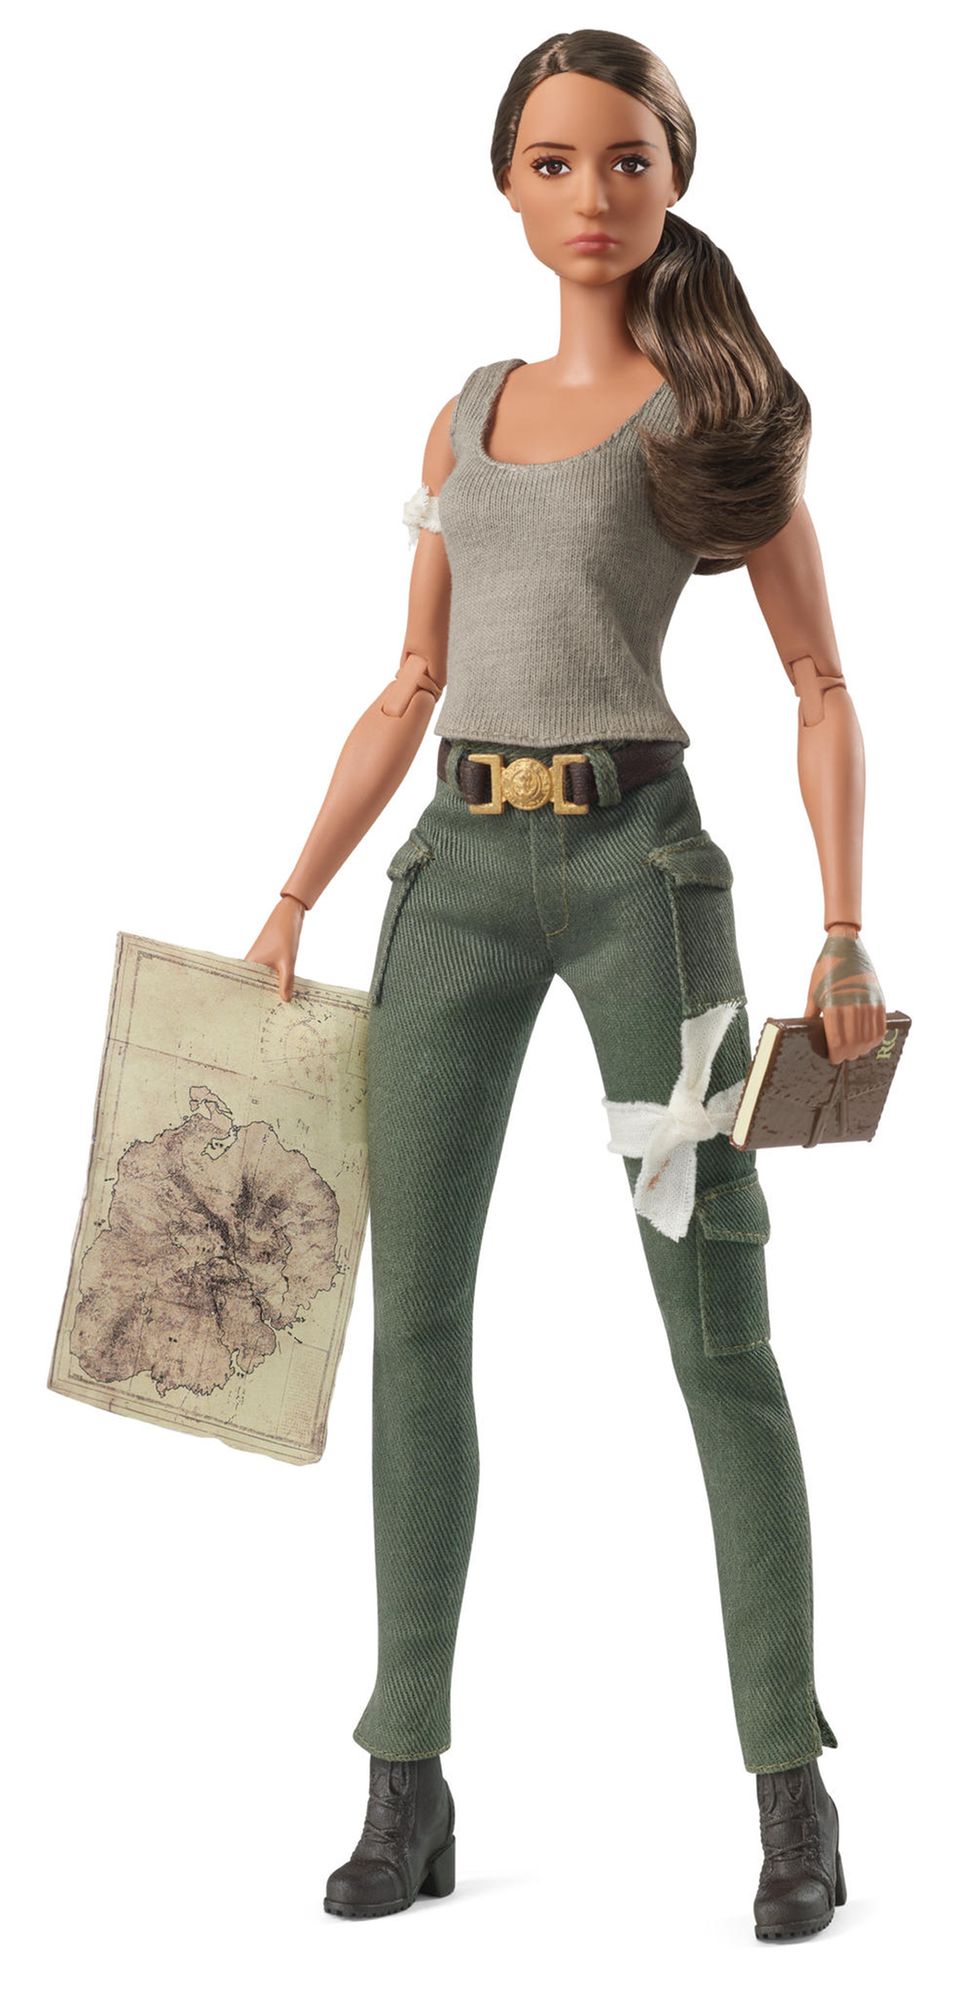 Ihre Rolle als Lara Croft in "Tomb Raider" hat Alicia Vikander zumindest schone eine Ehrung eingebracht: Die Schauspielerin wurde als Barbie verewigt. Zumindest bietet die Puppe, die eher einer Actionfigur gleicht, etwas Abwechslung im sonst so modelastigen Barbie-Universum.